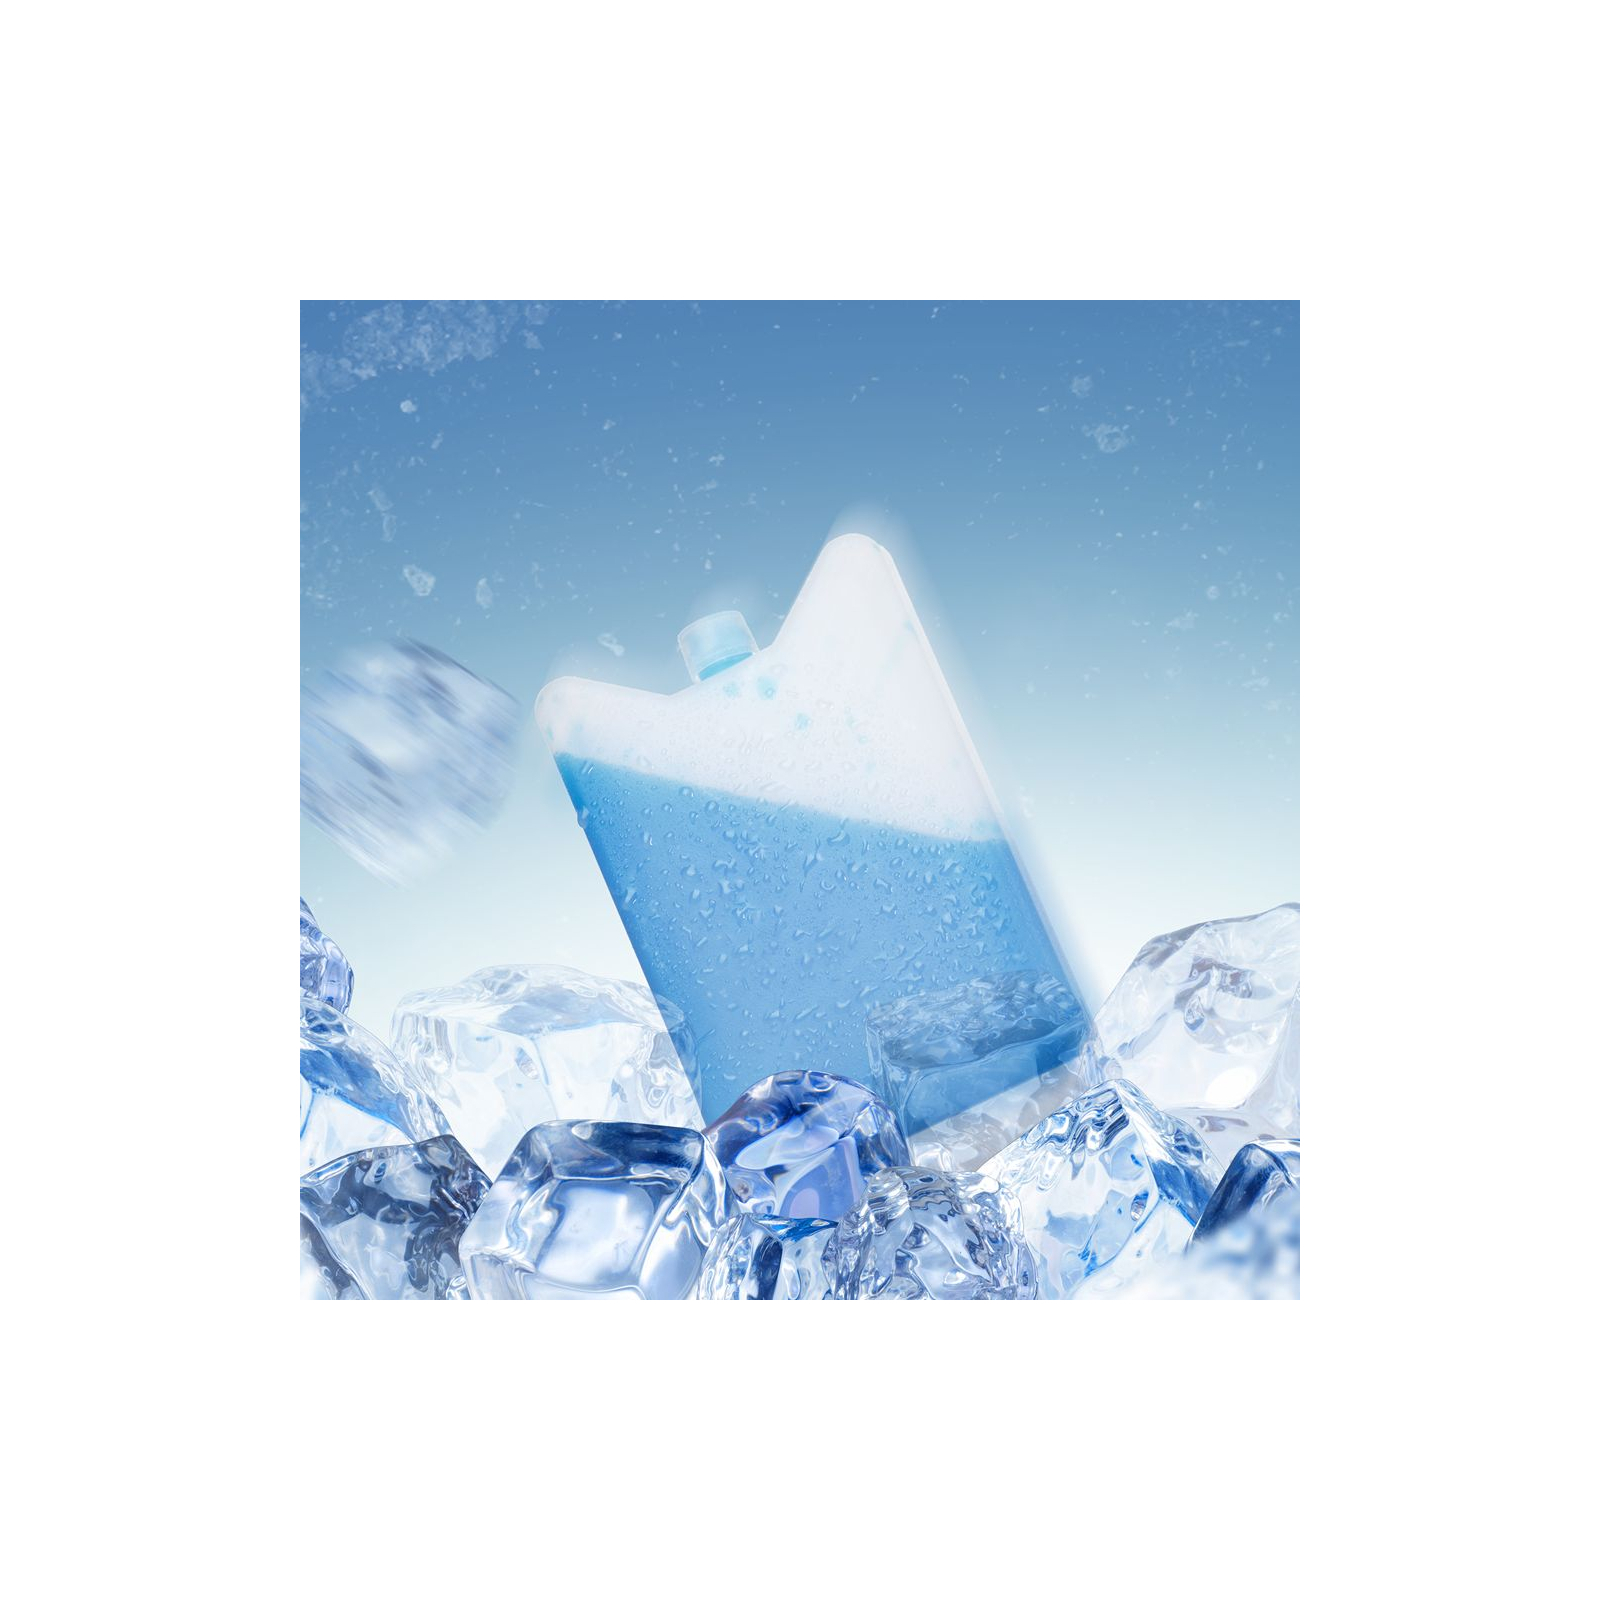 Аккумулятор холода IceBox гелевий 1500 мл (IceBox-1500) изображение 2